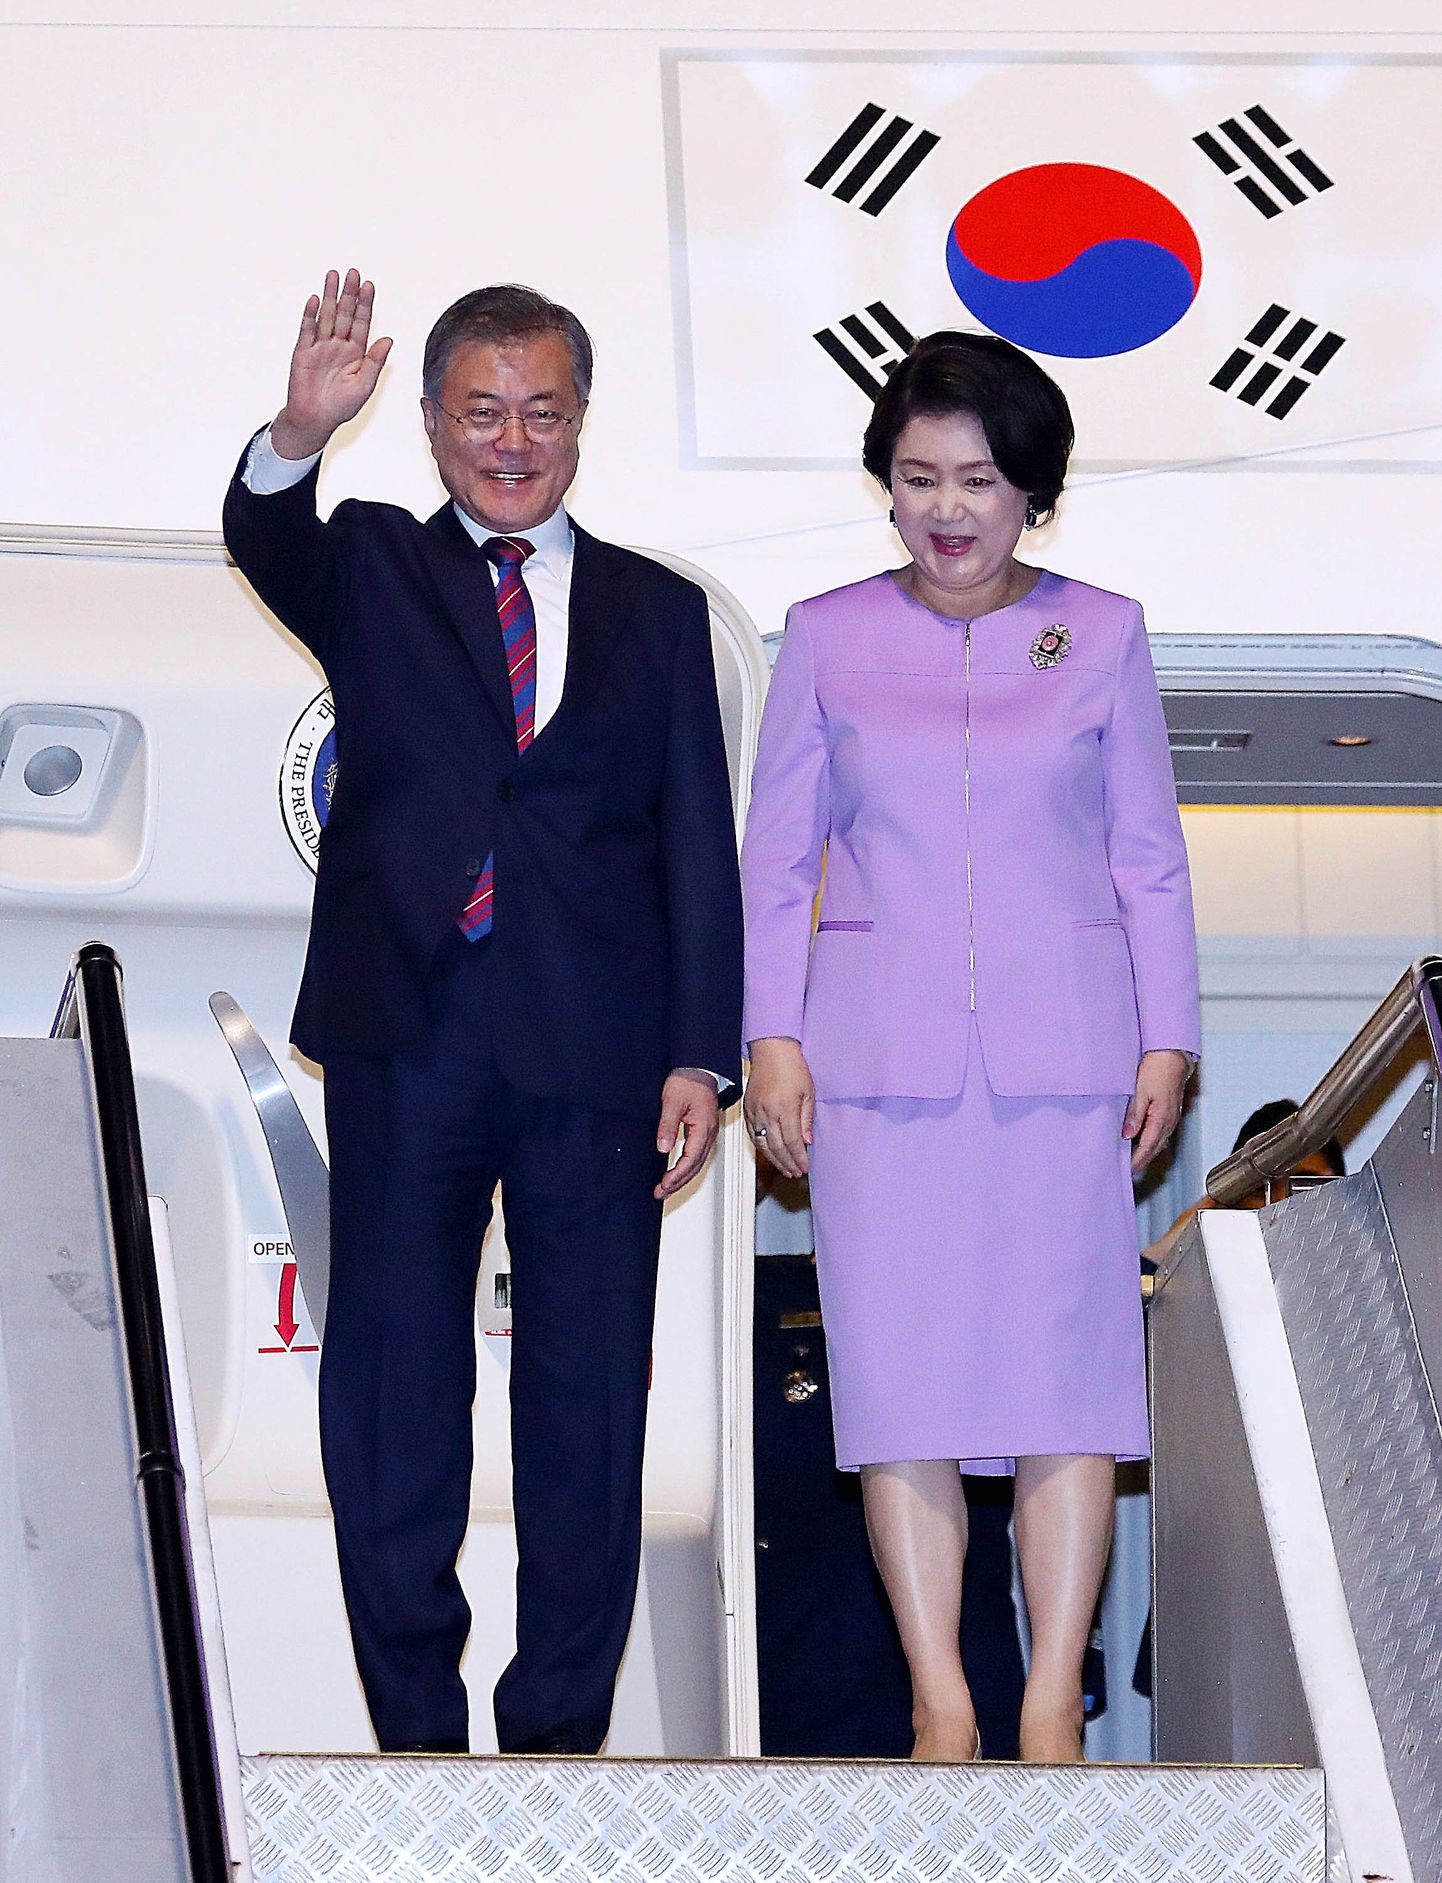 Lõuna-Korea president Moon-Jae in ja esimene leedi Kim Jung-sook saabumas pühapäeval Uus-Meremaale Aucklandi.